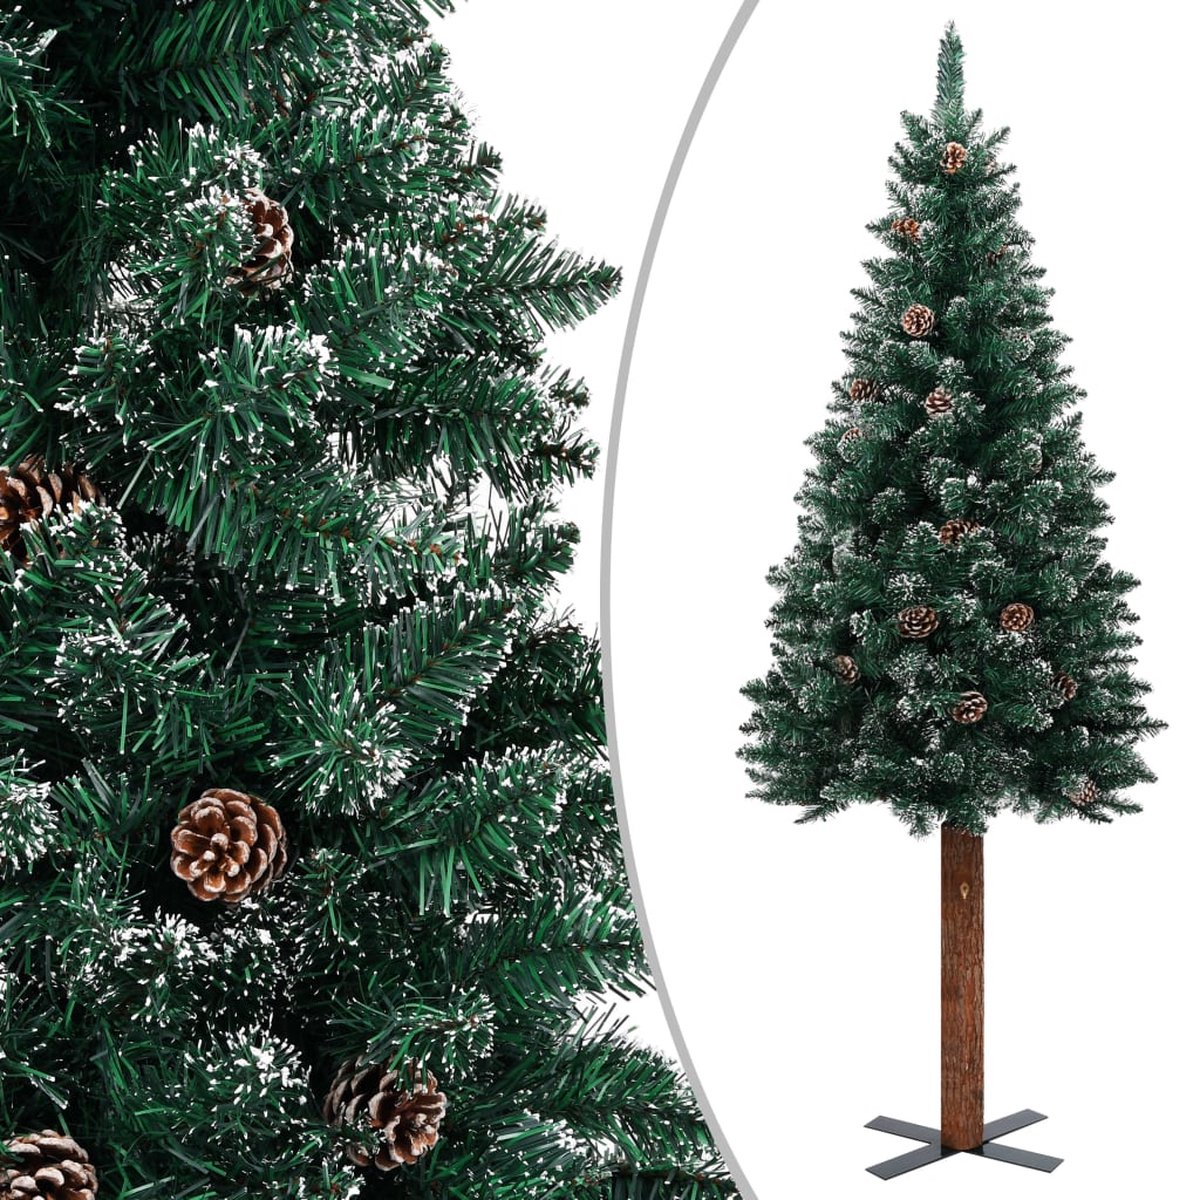 VidaLife Kerstboom met echt hout en witte sneeuw smal 210 cm groen